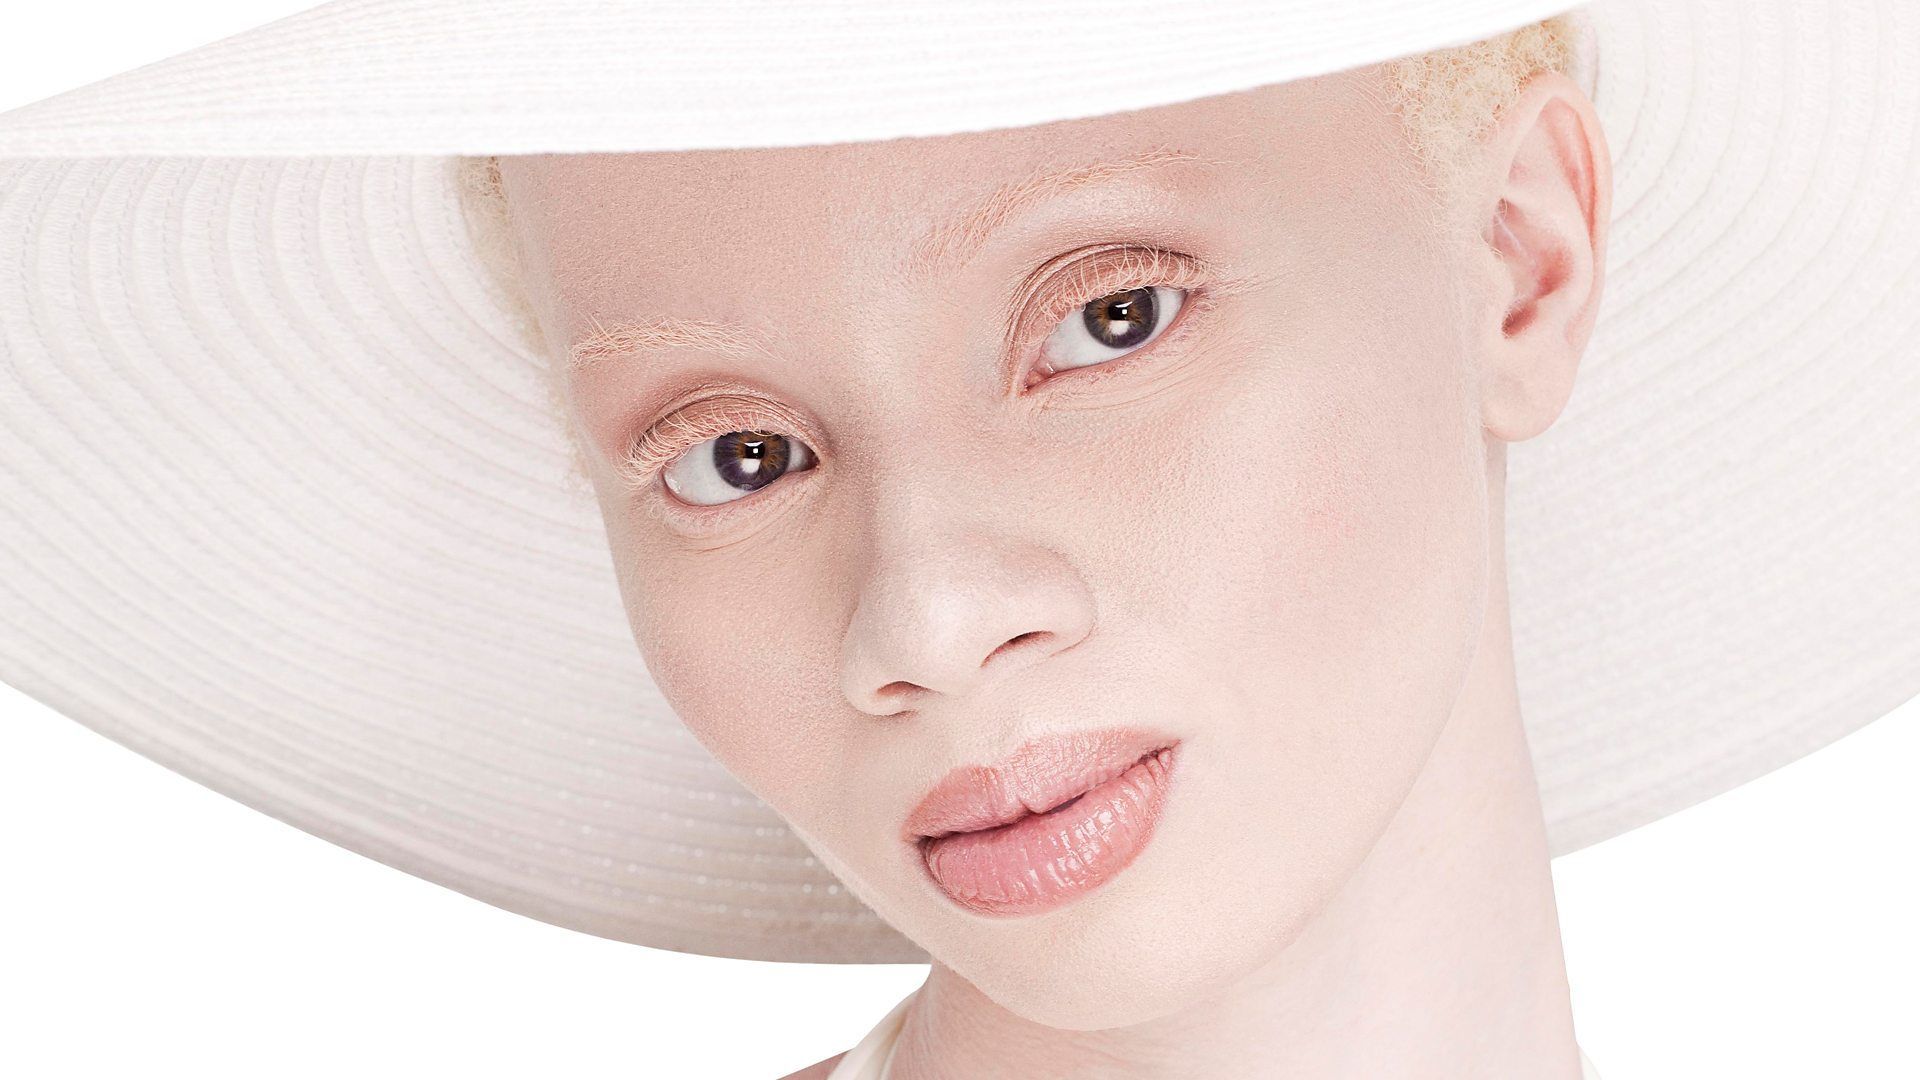 Afrique de l'Est : les albinos sont persécutés, victimes de croyances et de sorcellerie